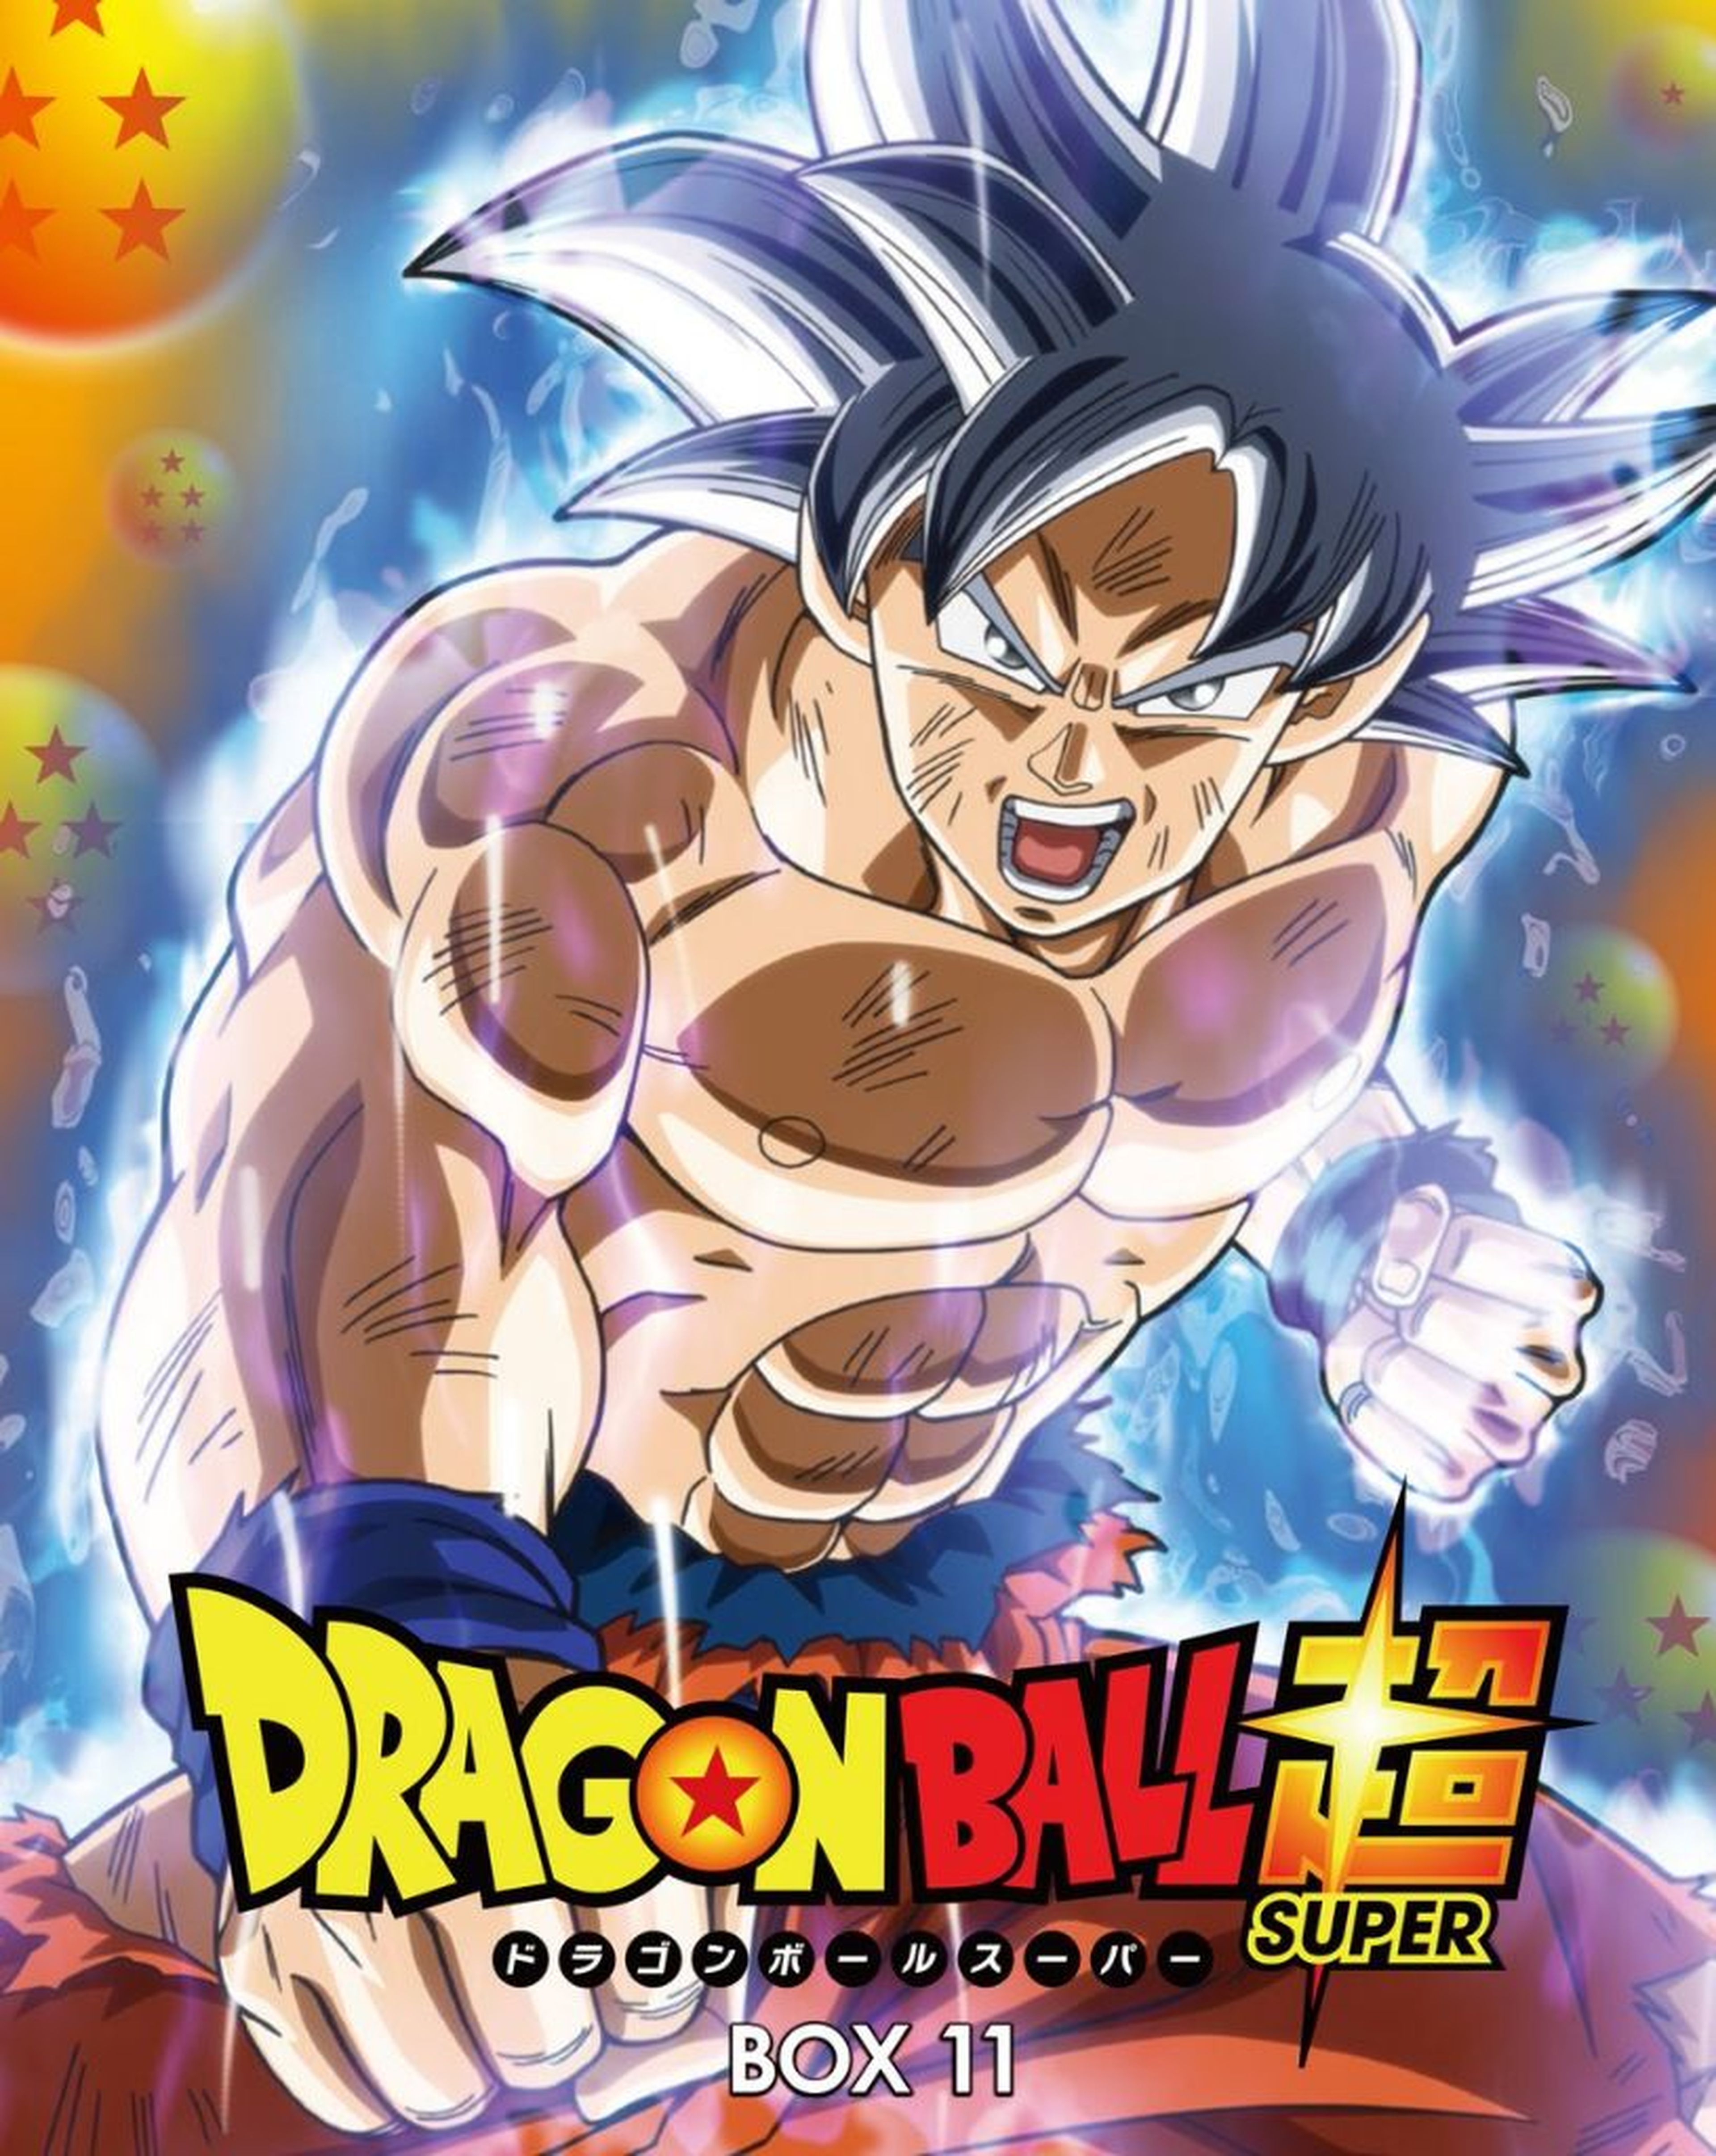 Dragon Ball Super DVD/Blu-ray